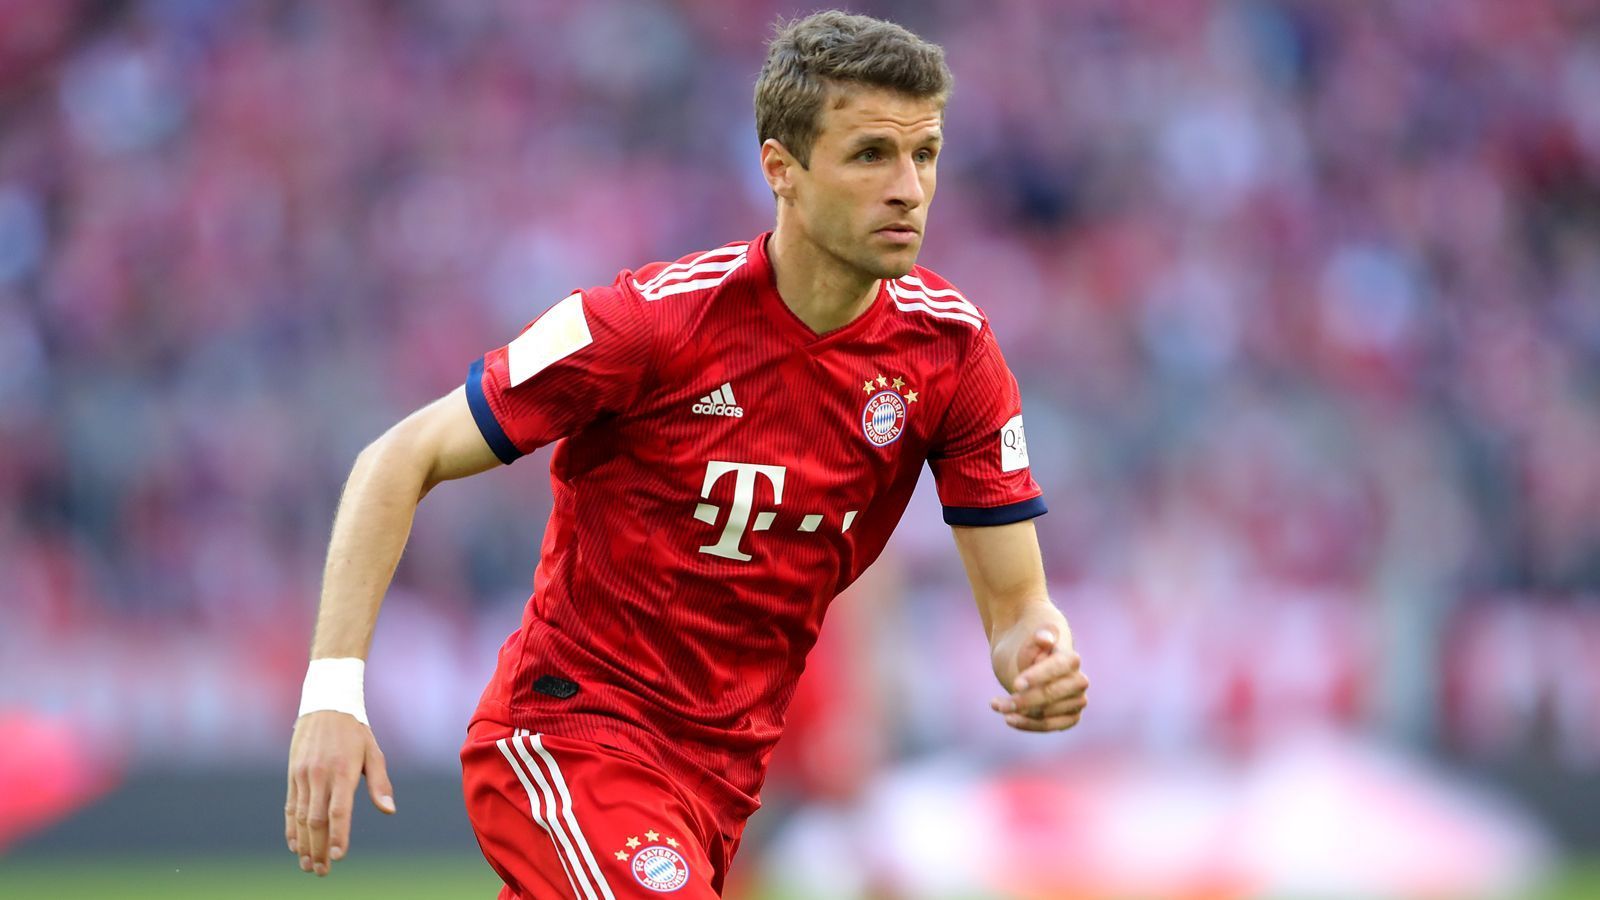 
                <strong>Platz 1 - Thomas Müller (FC Bayern München) - 205 Scorerpunkte</strong><br>
                Bundesliga-Tore: 110Bundesliga-Vorlagen: 95
              